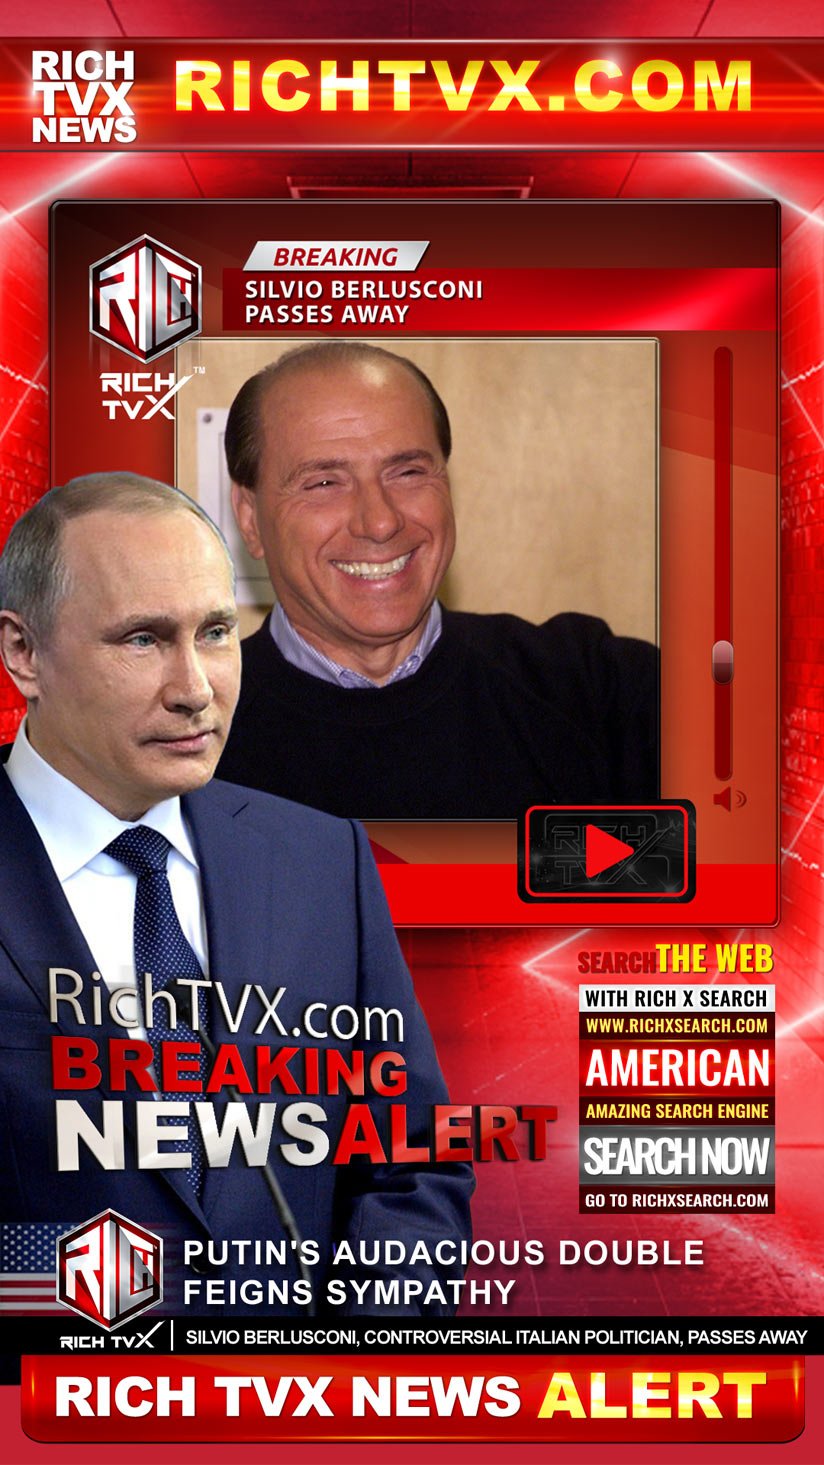 Putin's Double